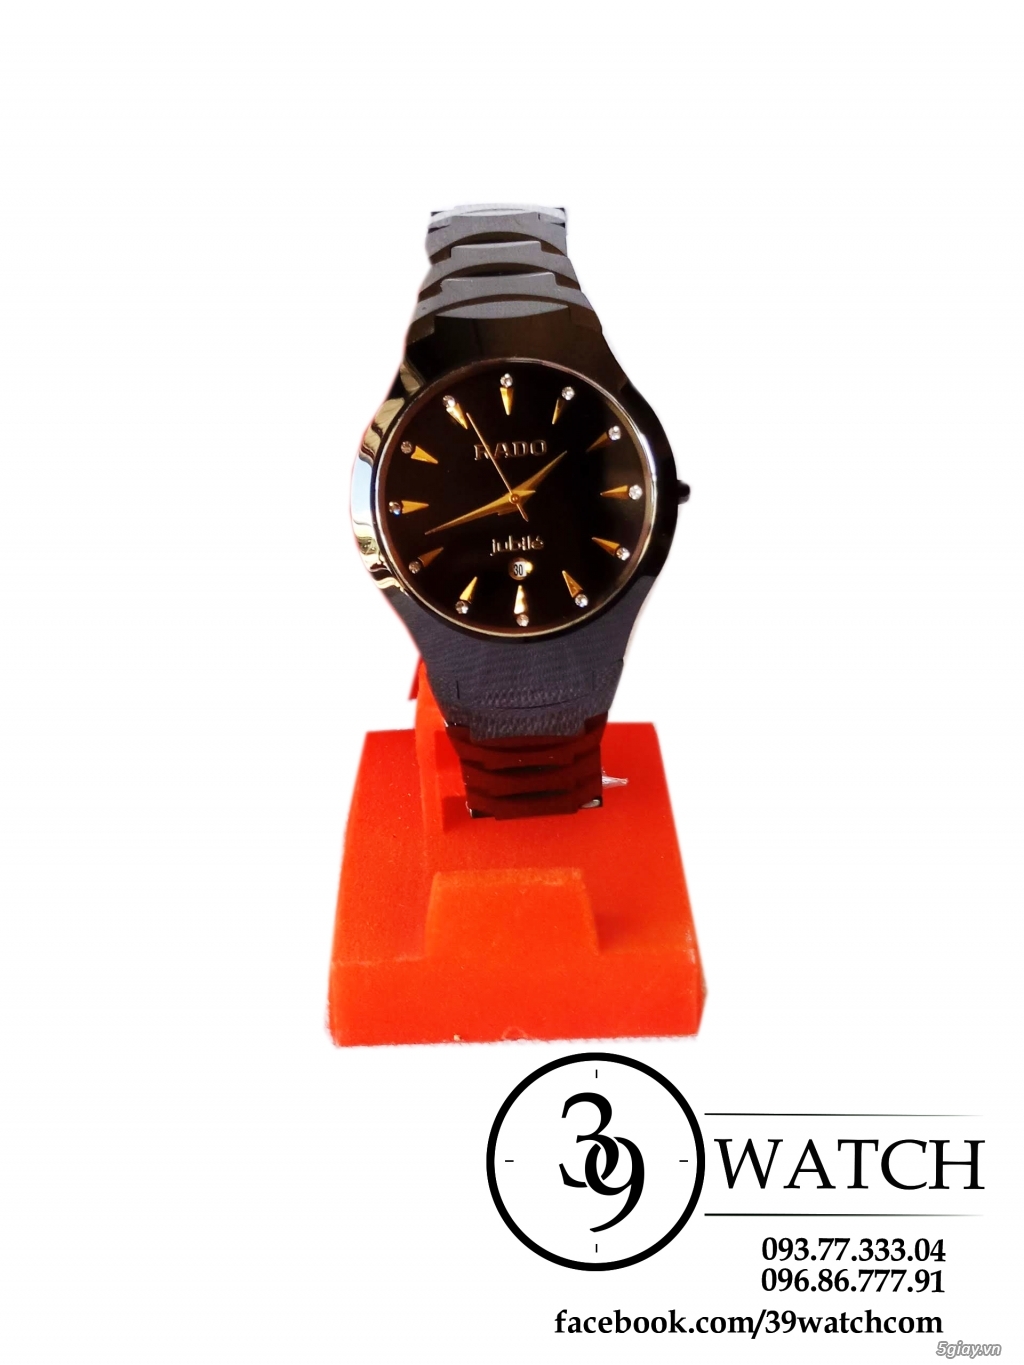 Đồng hồ nam dây đá Ceramic thương hiệu R.a.d.o màu đen mạnh mẽ